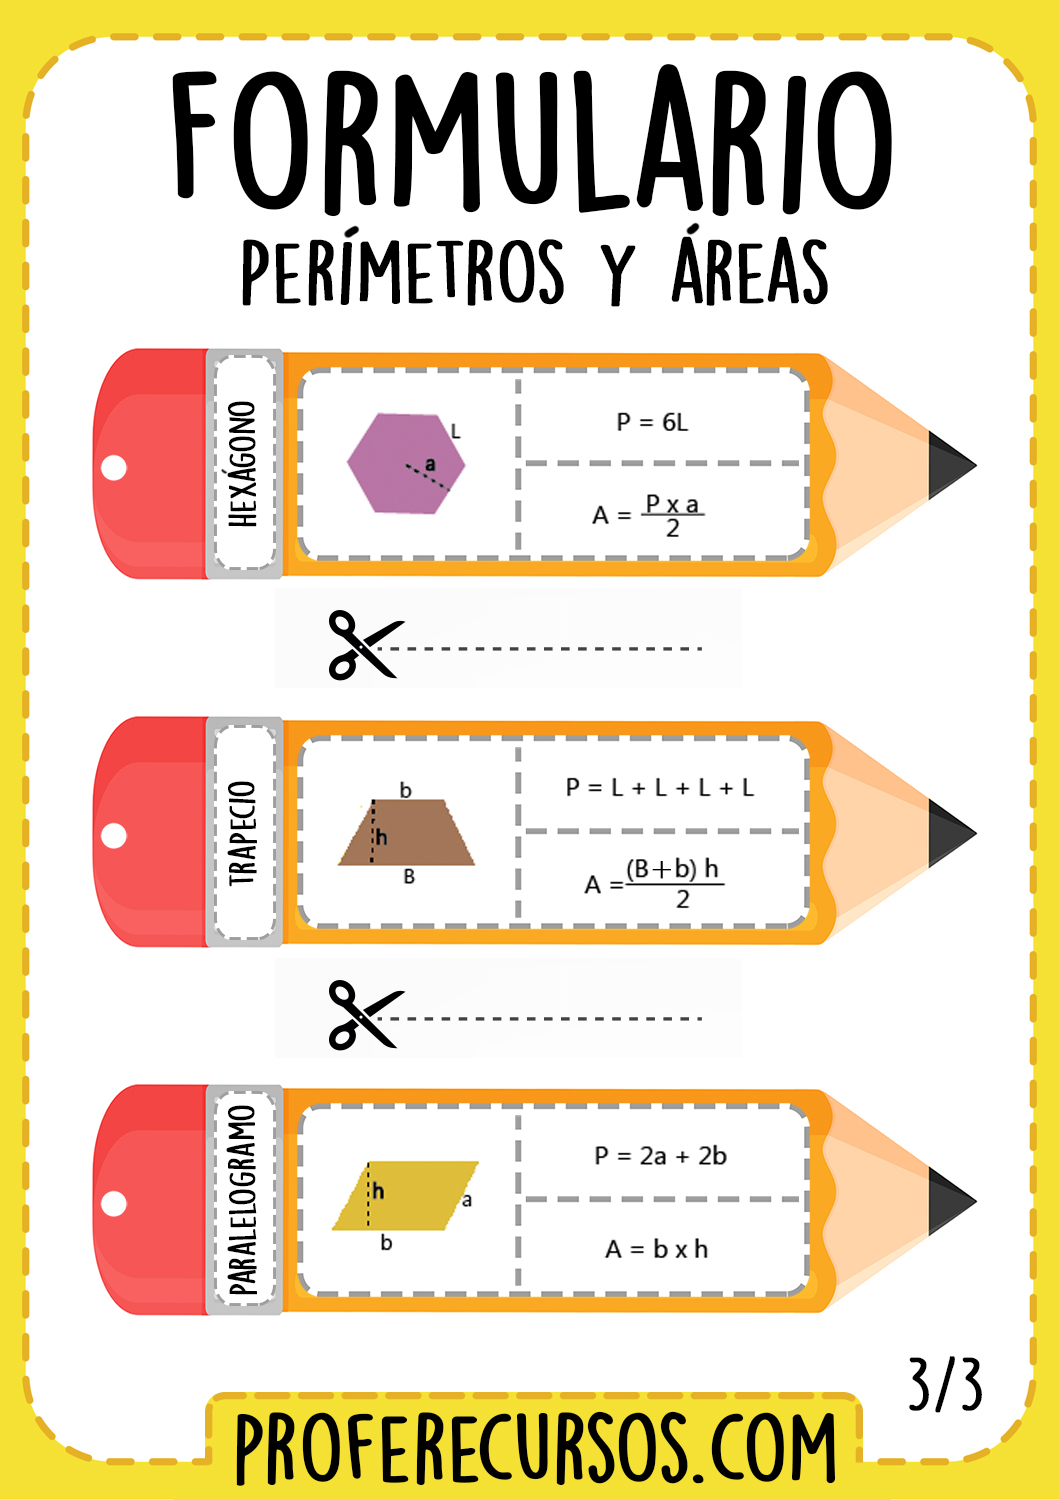 Formulas-areas-geometricas-matematicas-para-niños